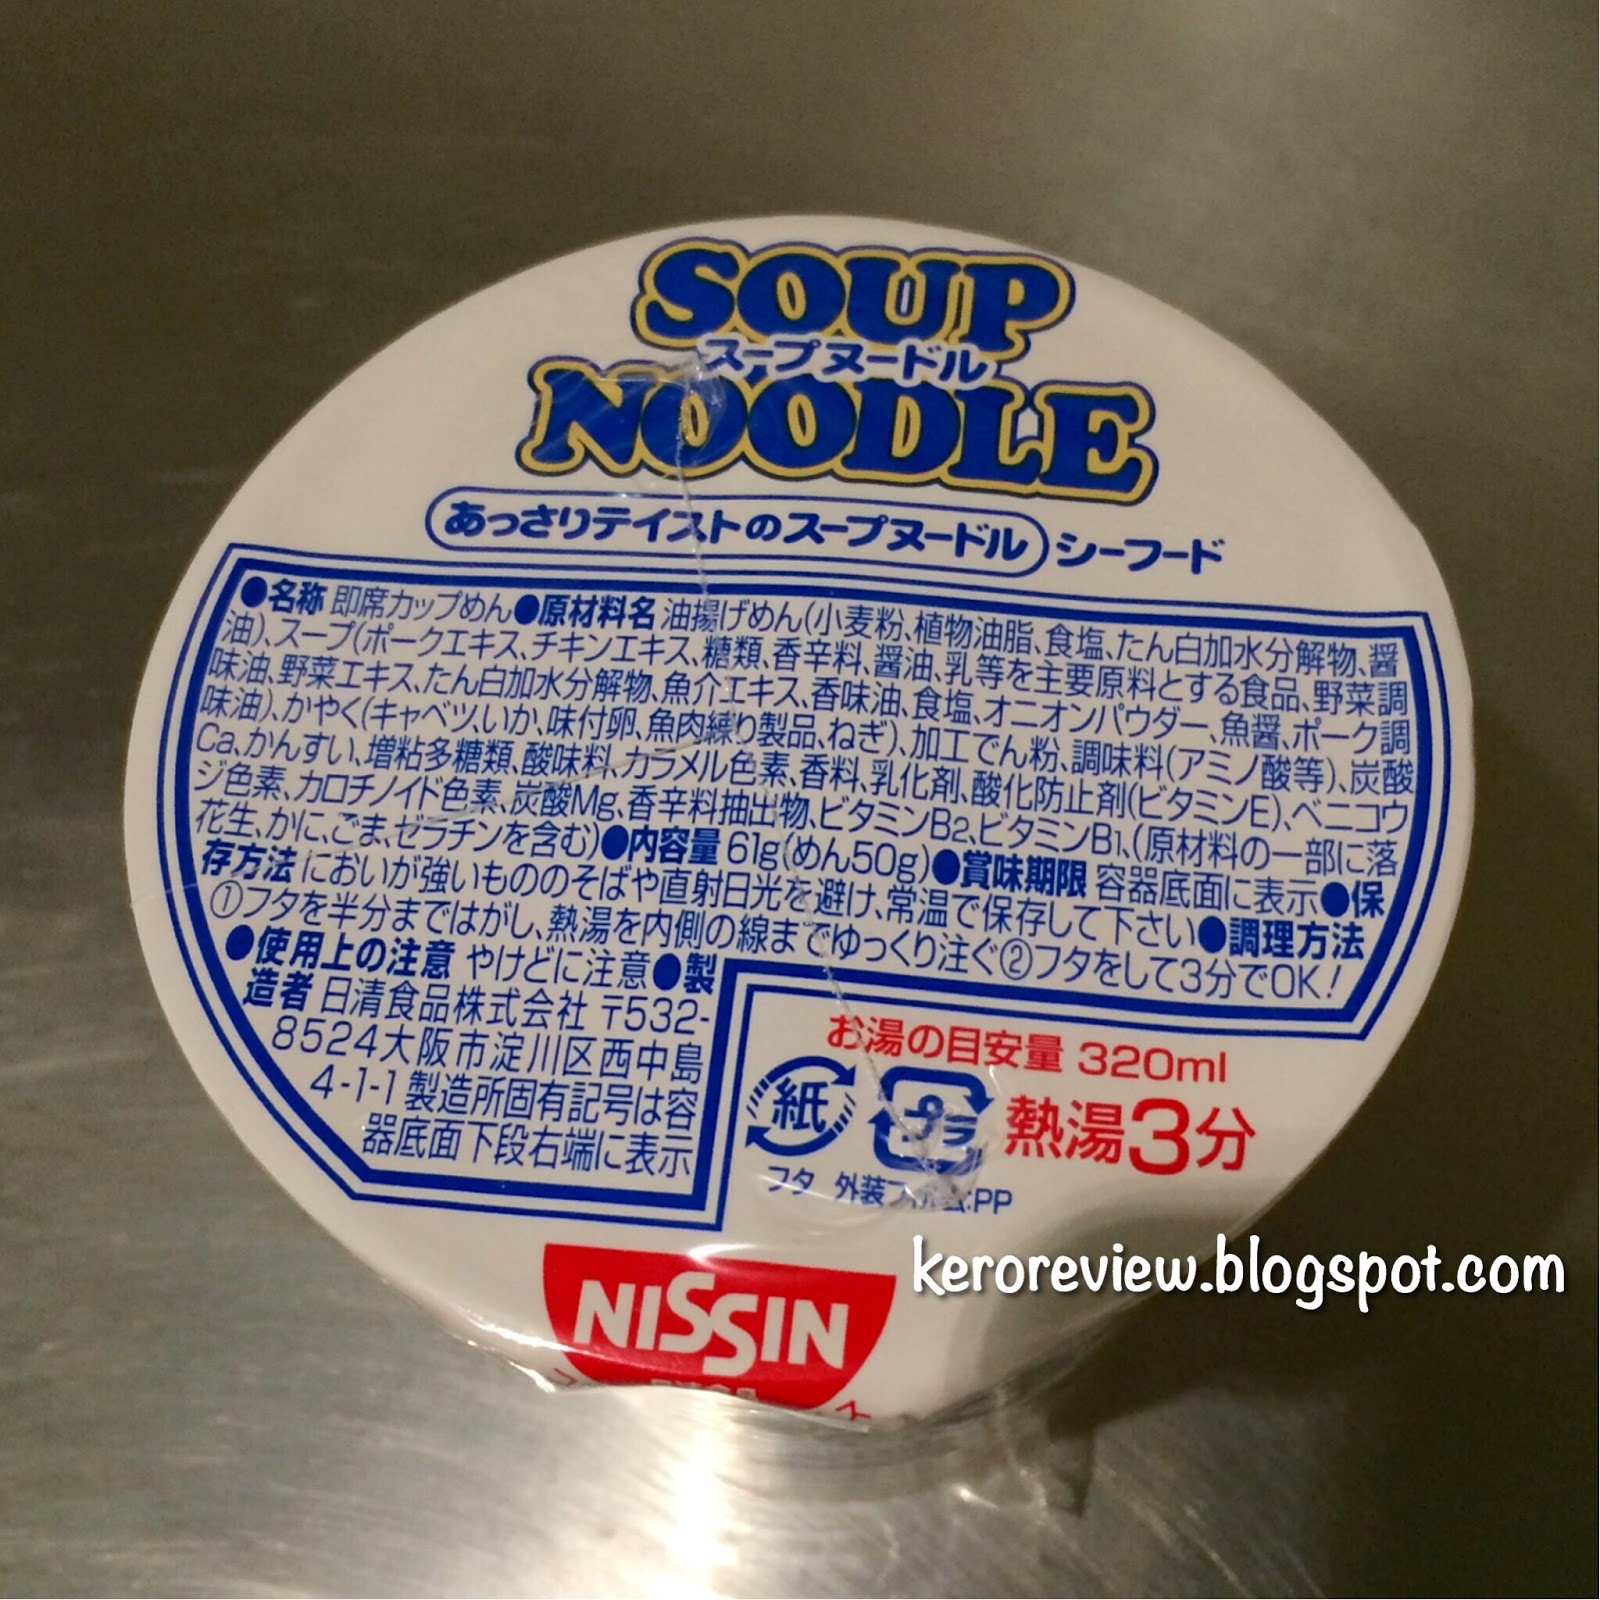 รีวิว นิชชินบะหมี่กึ่งสำเร็จรูปญี่ปุ่น รสซุปทะเล (CR)  Review Nissin Seafood Soup Noodles from Japan.